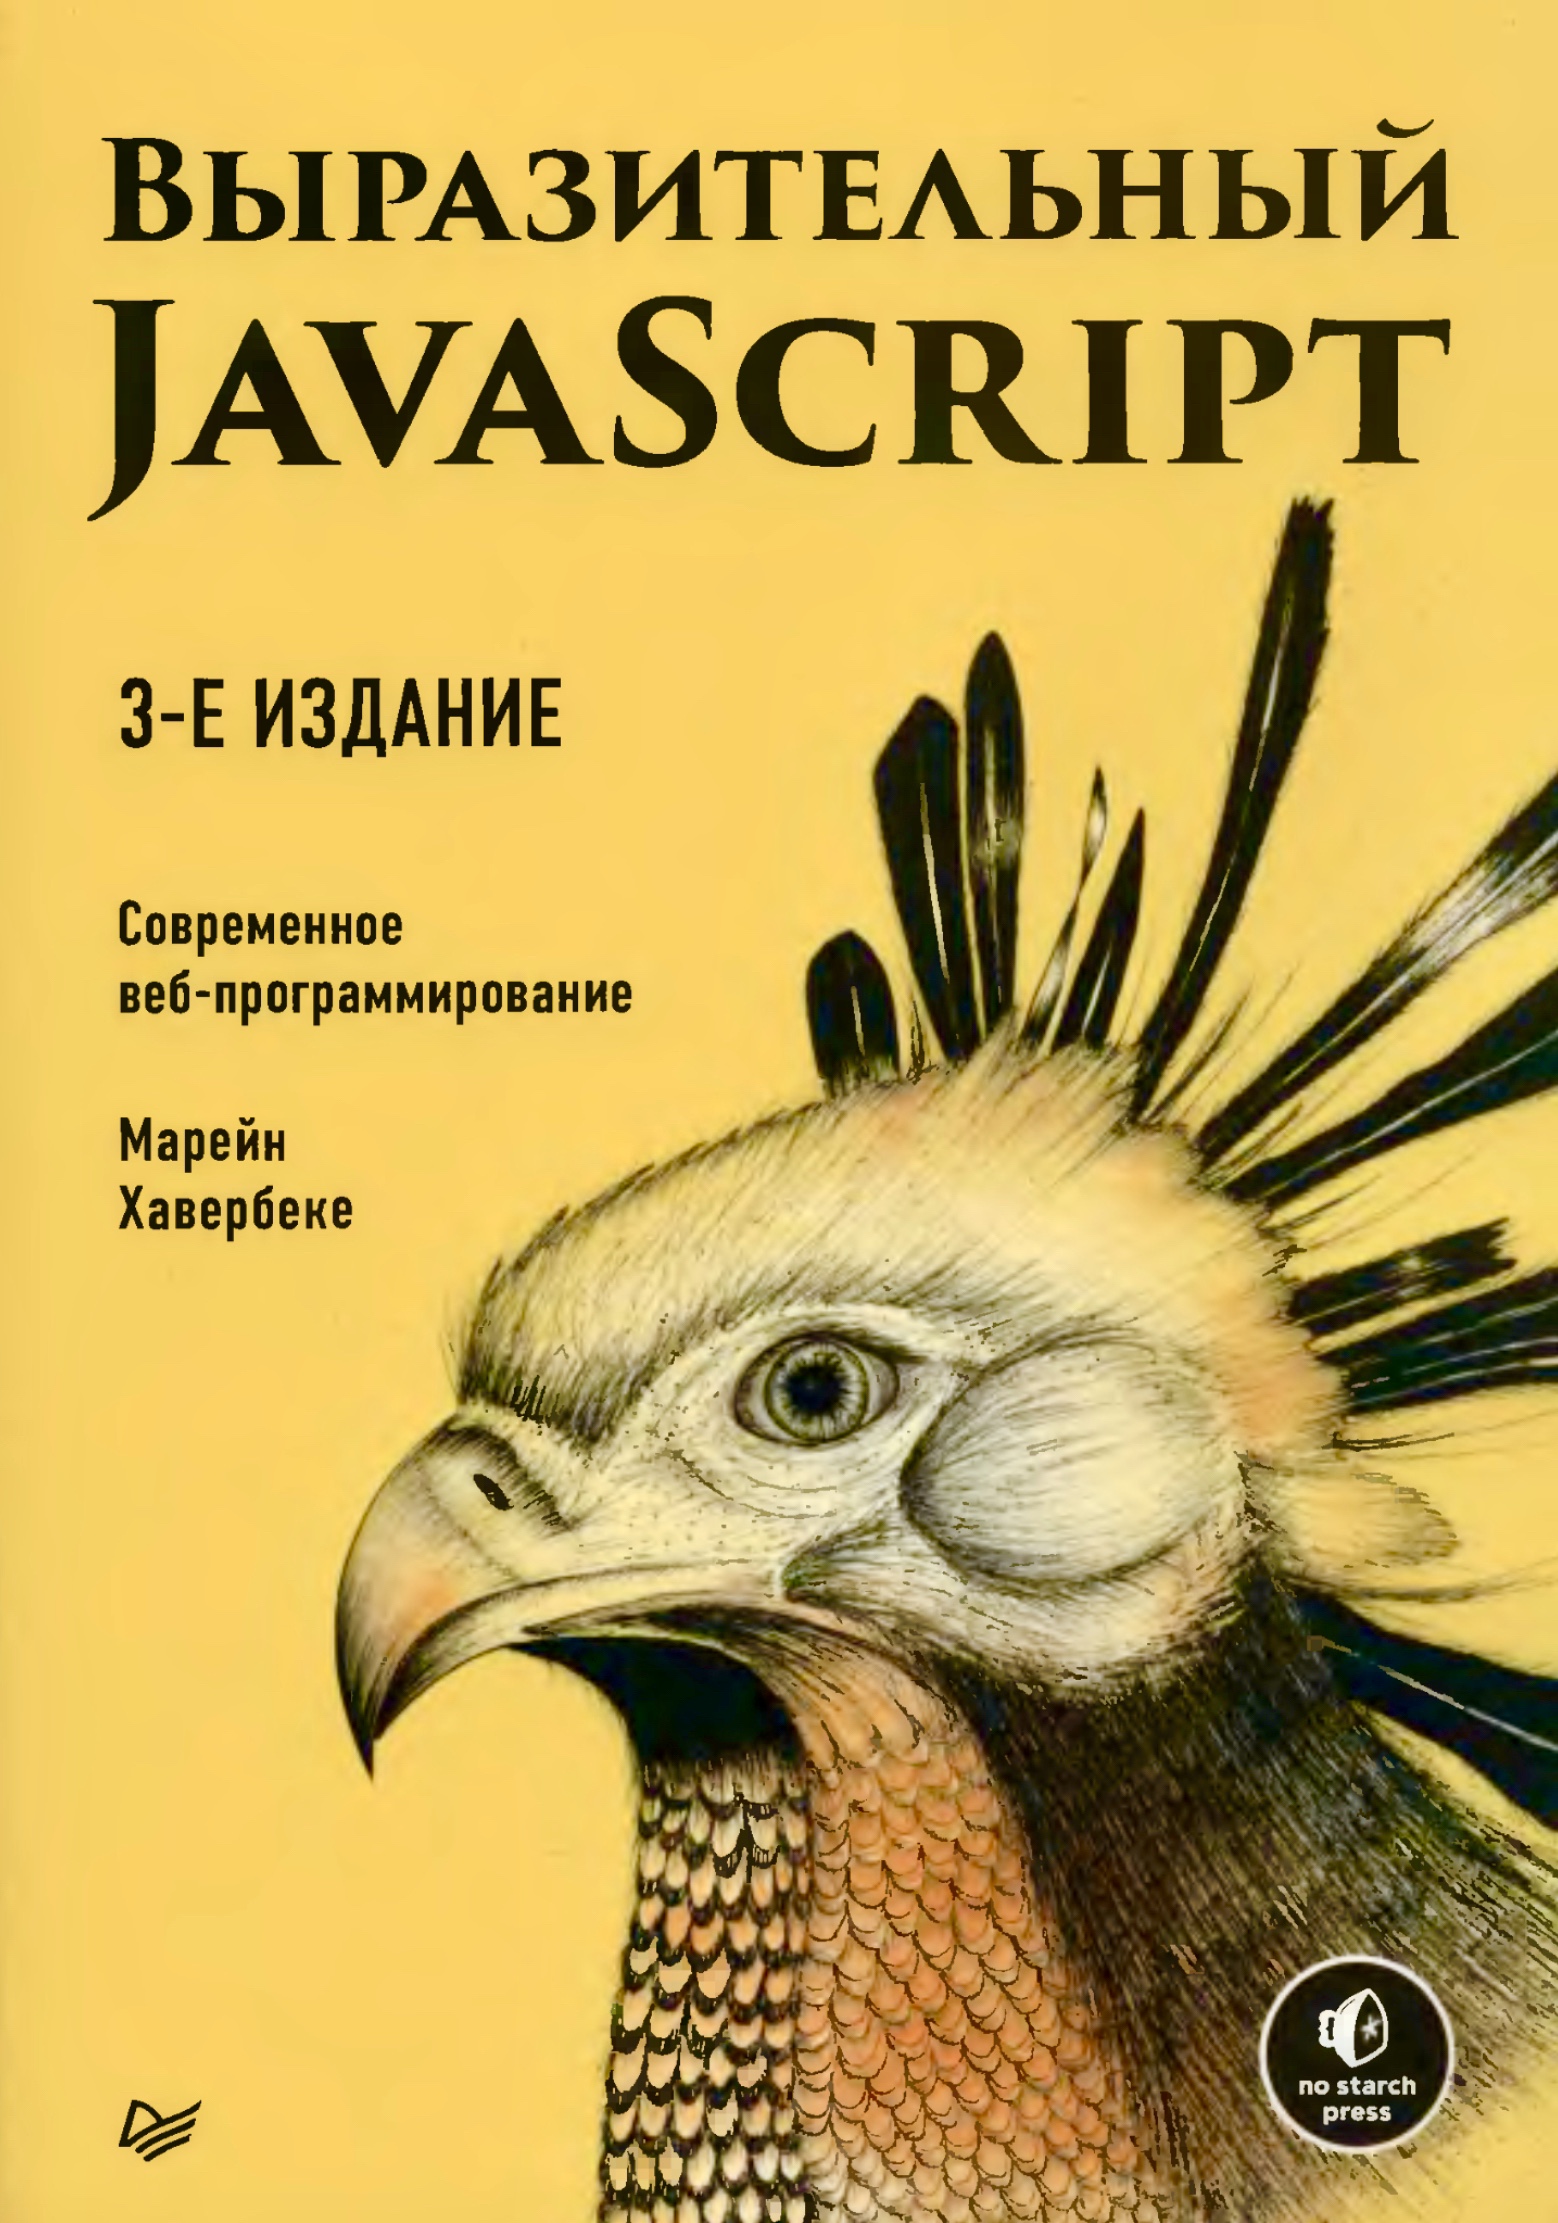 Обложка книги Выразительный JavaScript, 2019